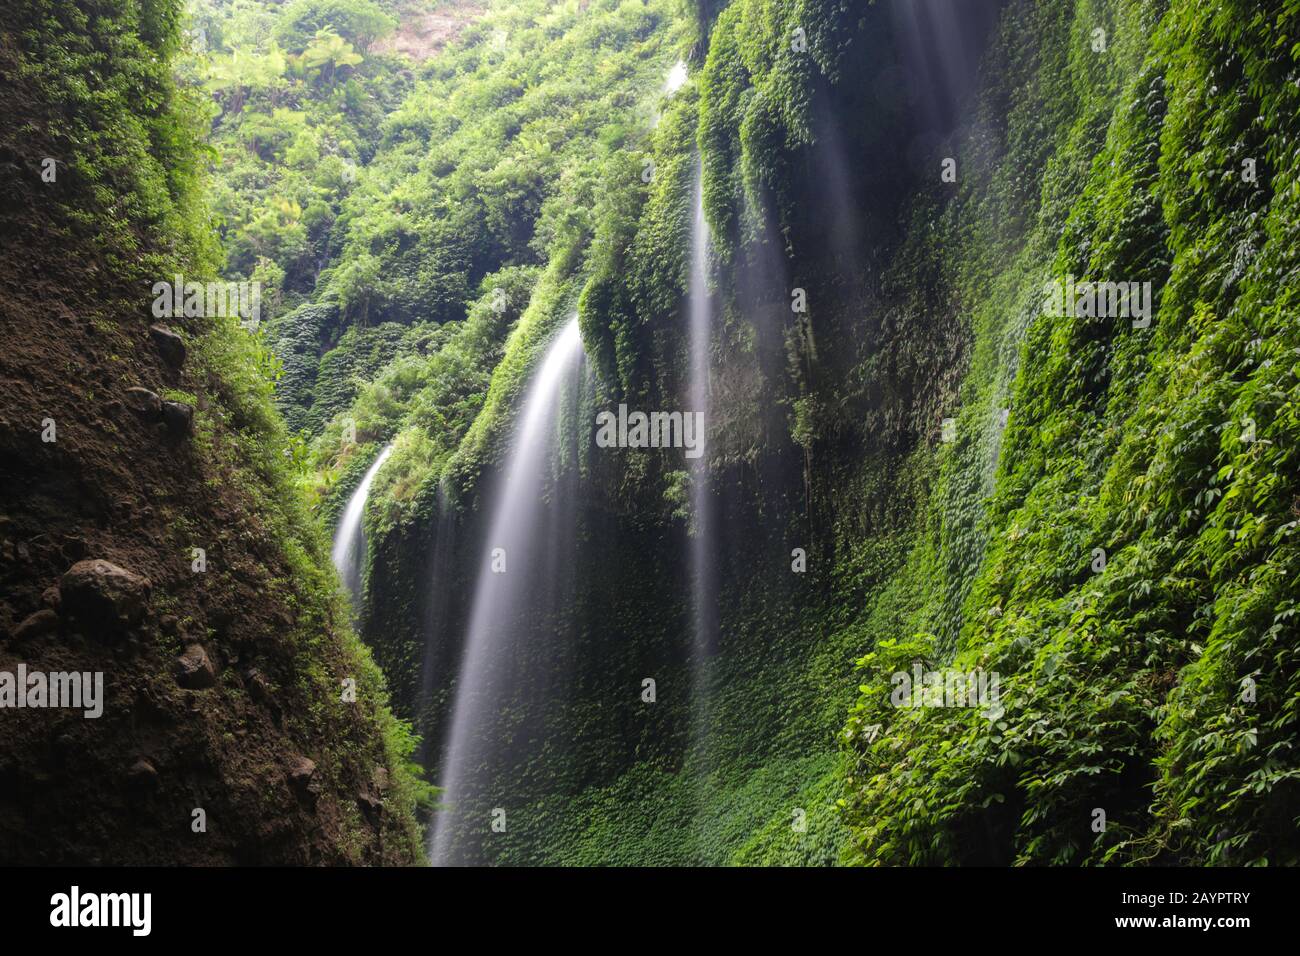 Madakaripura Wasserfall, in Ostjava, Indonesien. Mehrere Wasserfälle strömen die steile Klippe hinunter, die von tropischer Vegetation bedeckt ist. Stockfoto